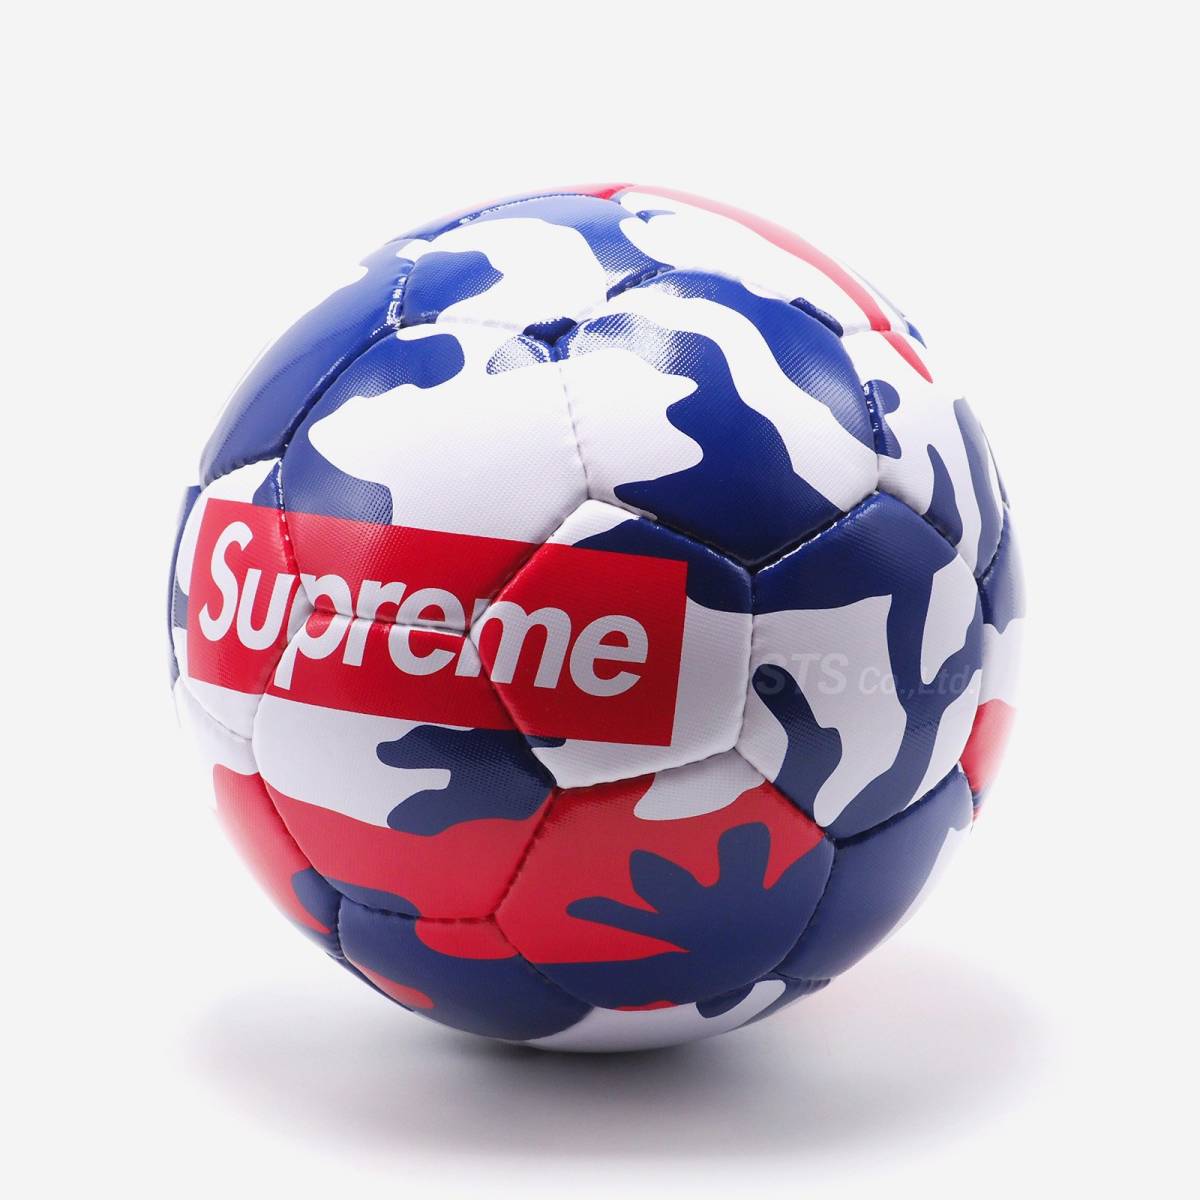 Supreme/Umbro Soccer Ball red duck Supreme / Umbro soccer ball